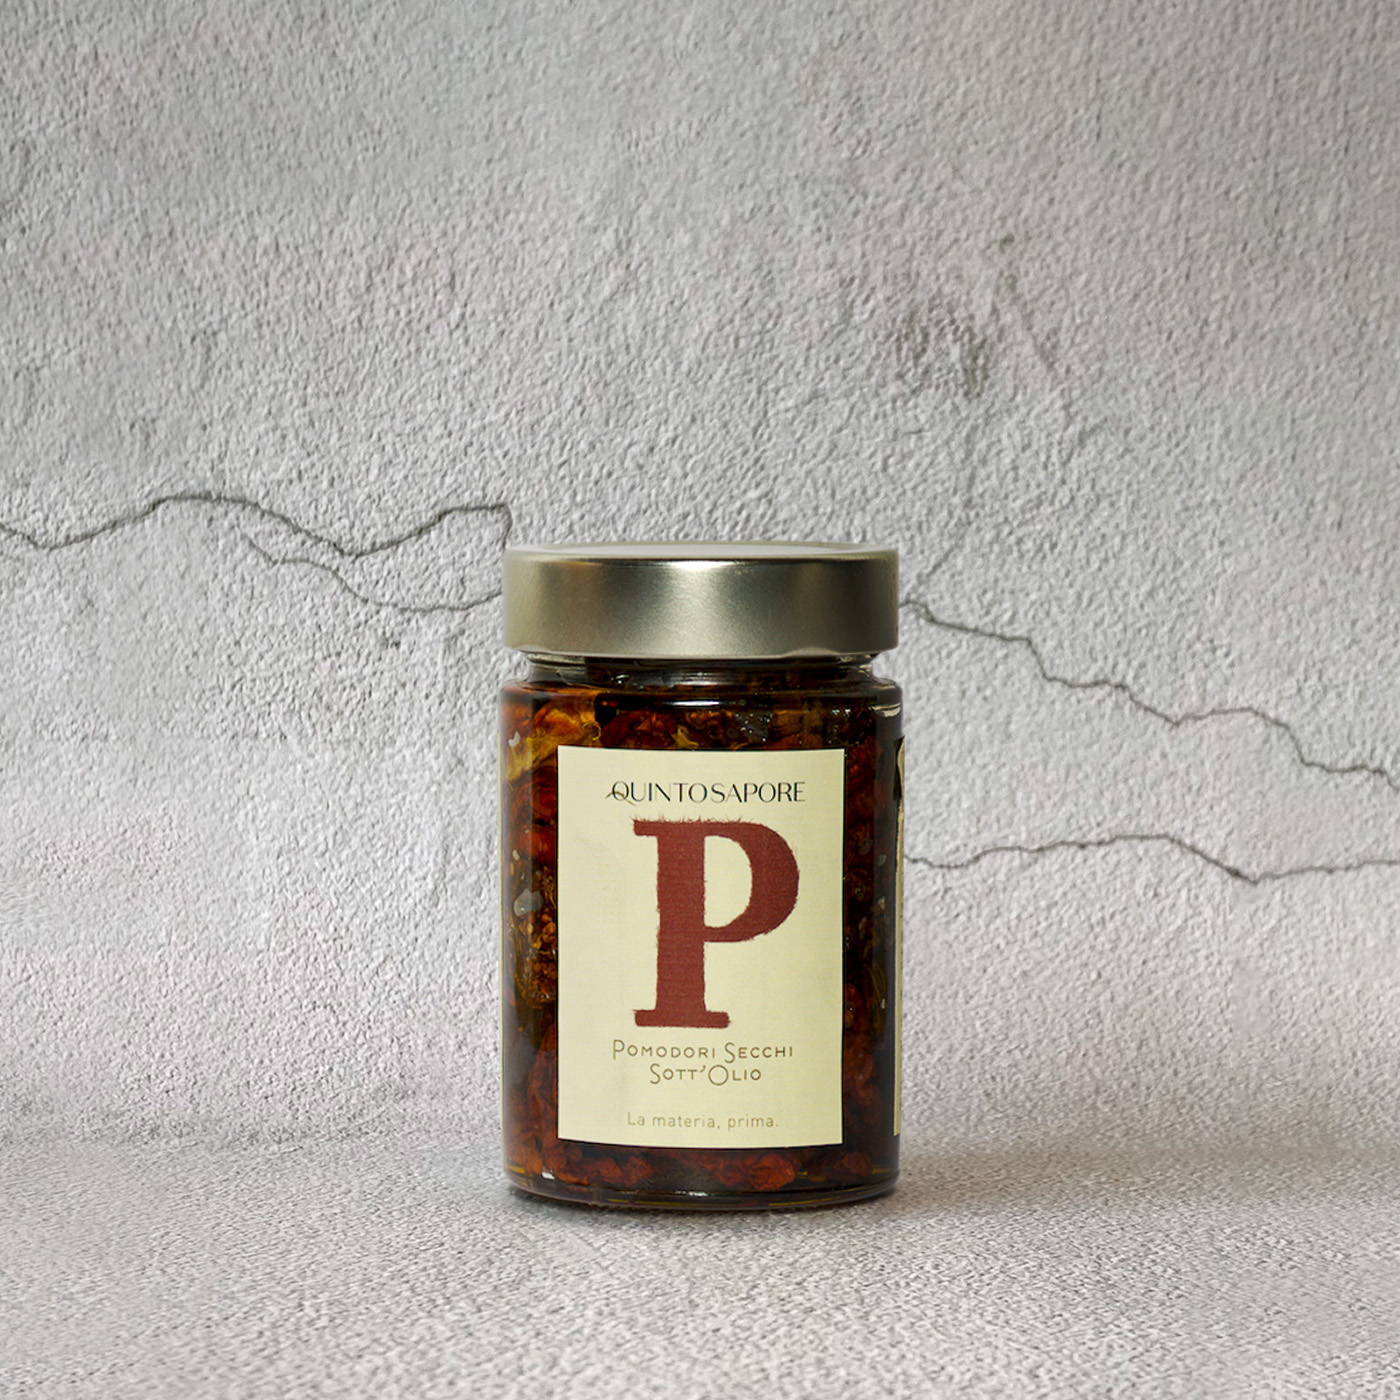 Santocielo - Product Carousel - Pomodori secchi sott'olio